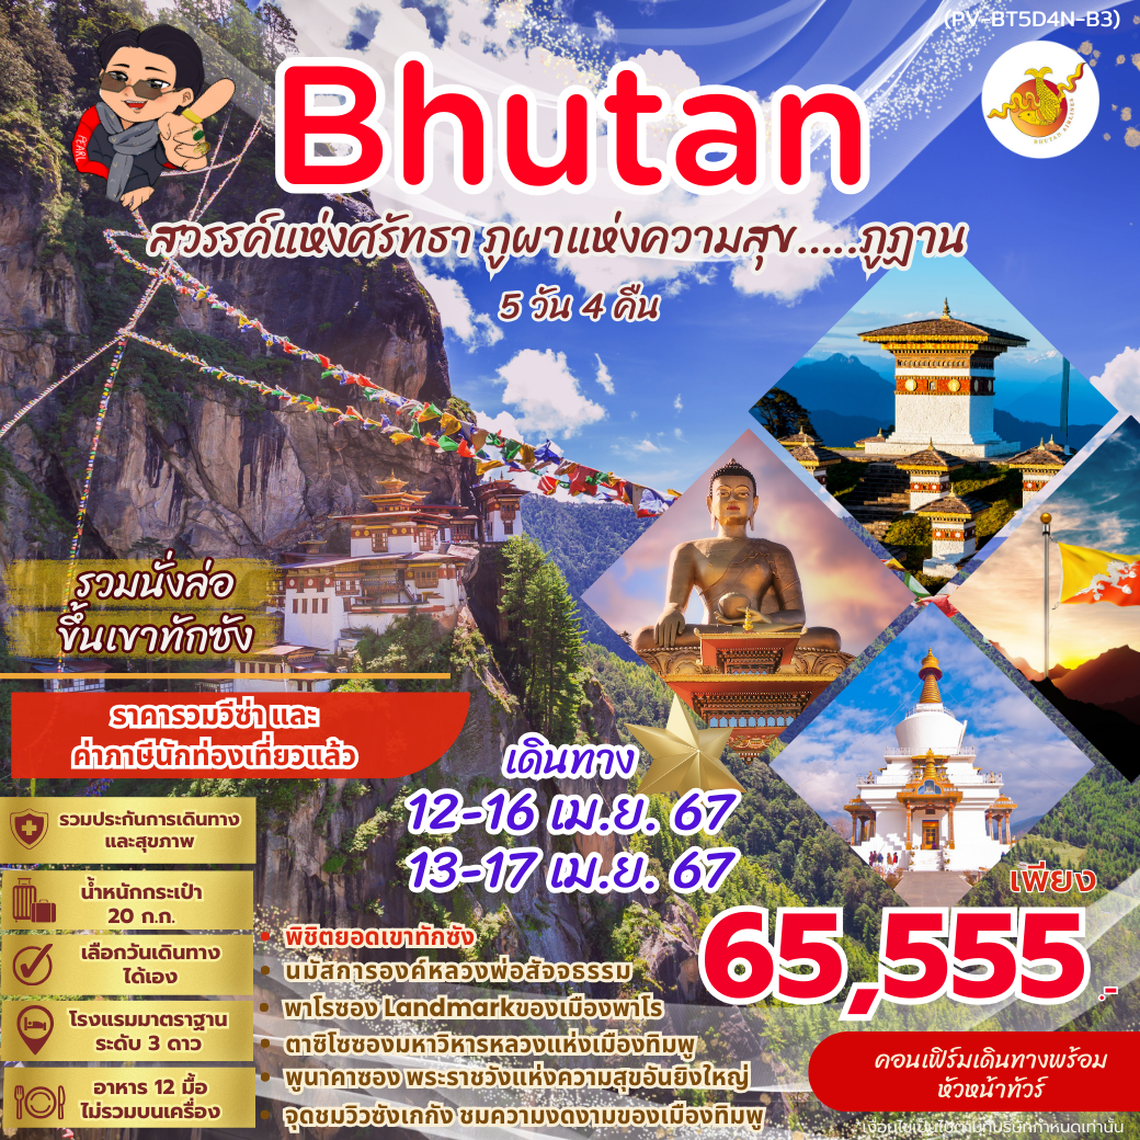 ทัวร์ภูฏาน BHUTAN 5 DAYS 4 NIGHTS BY B3